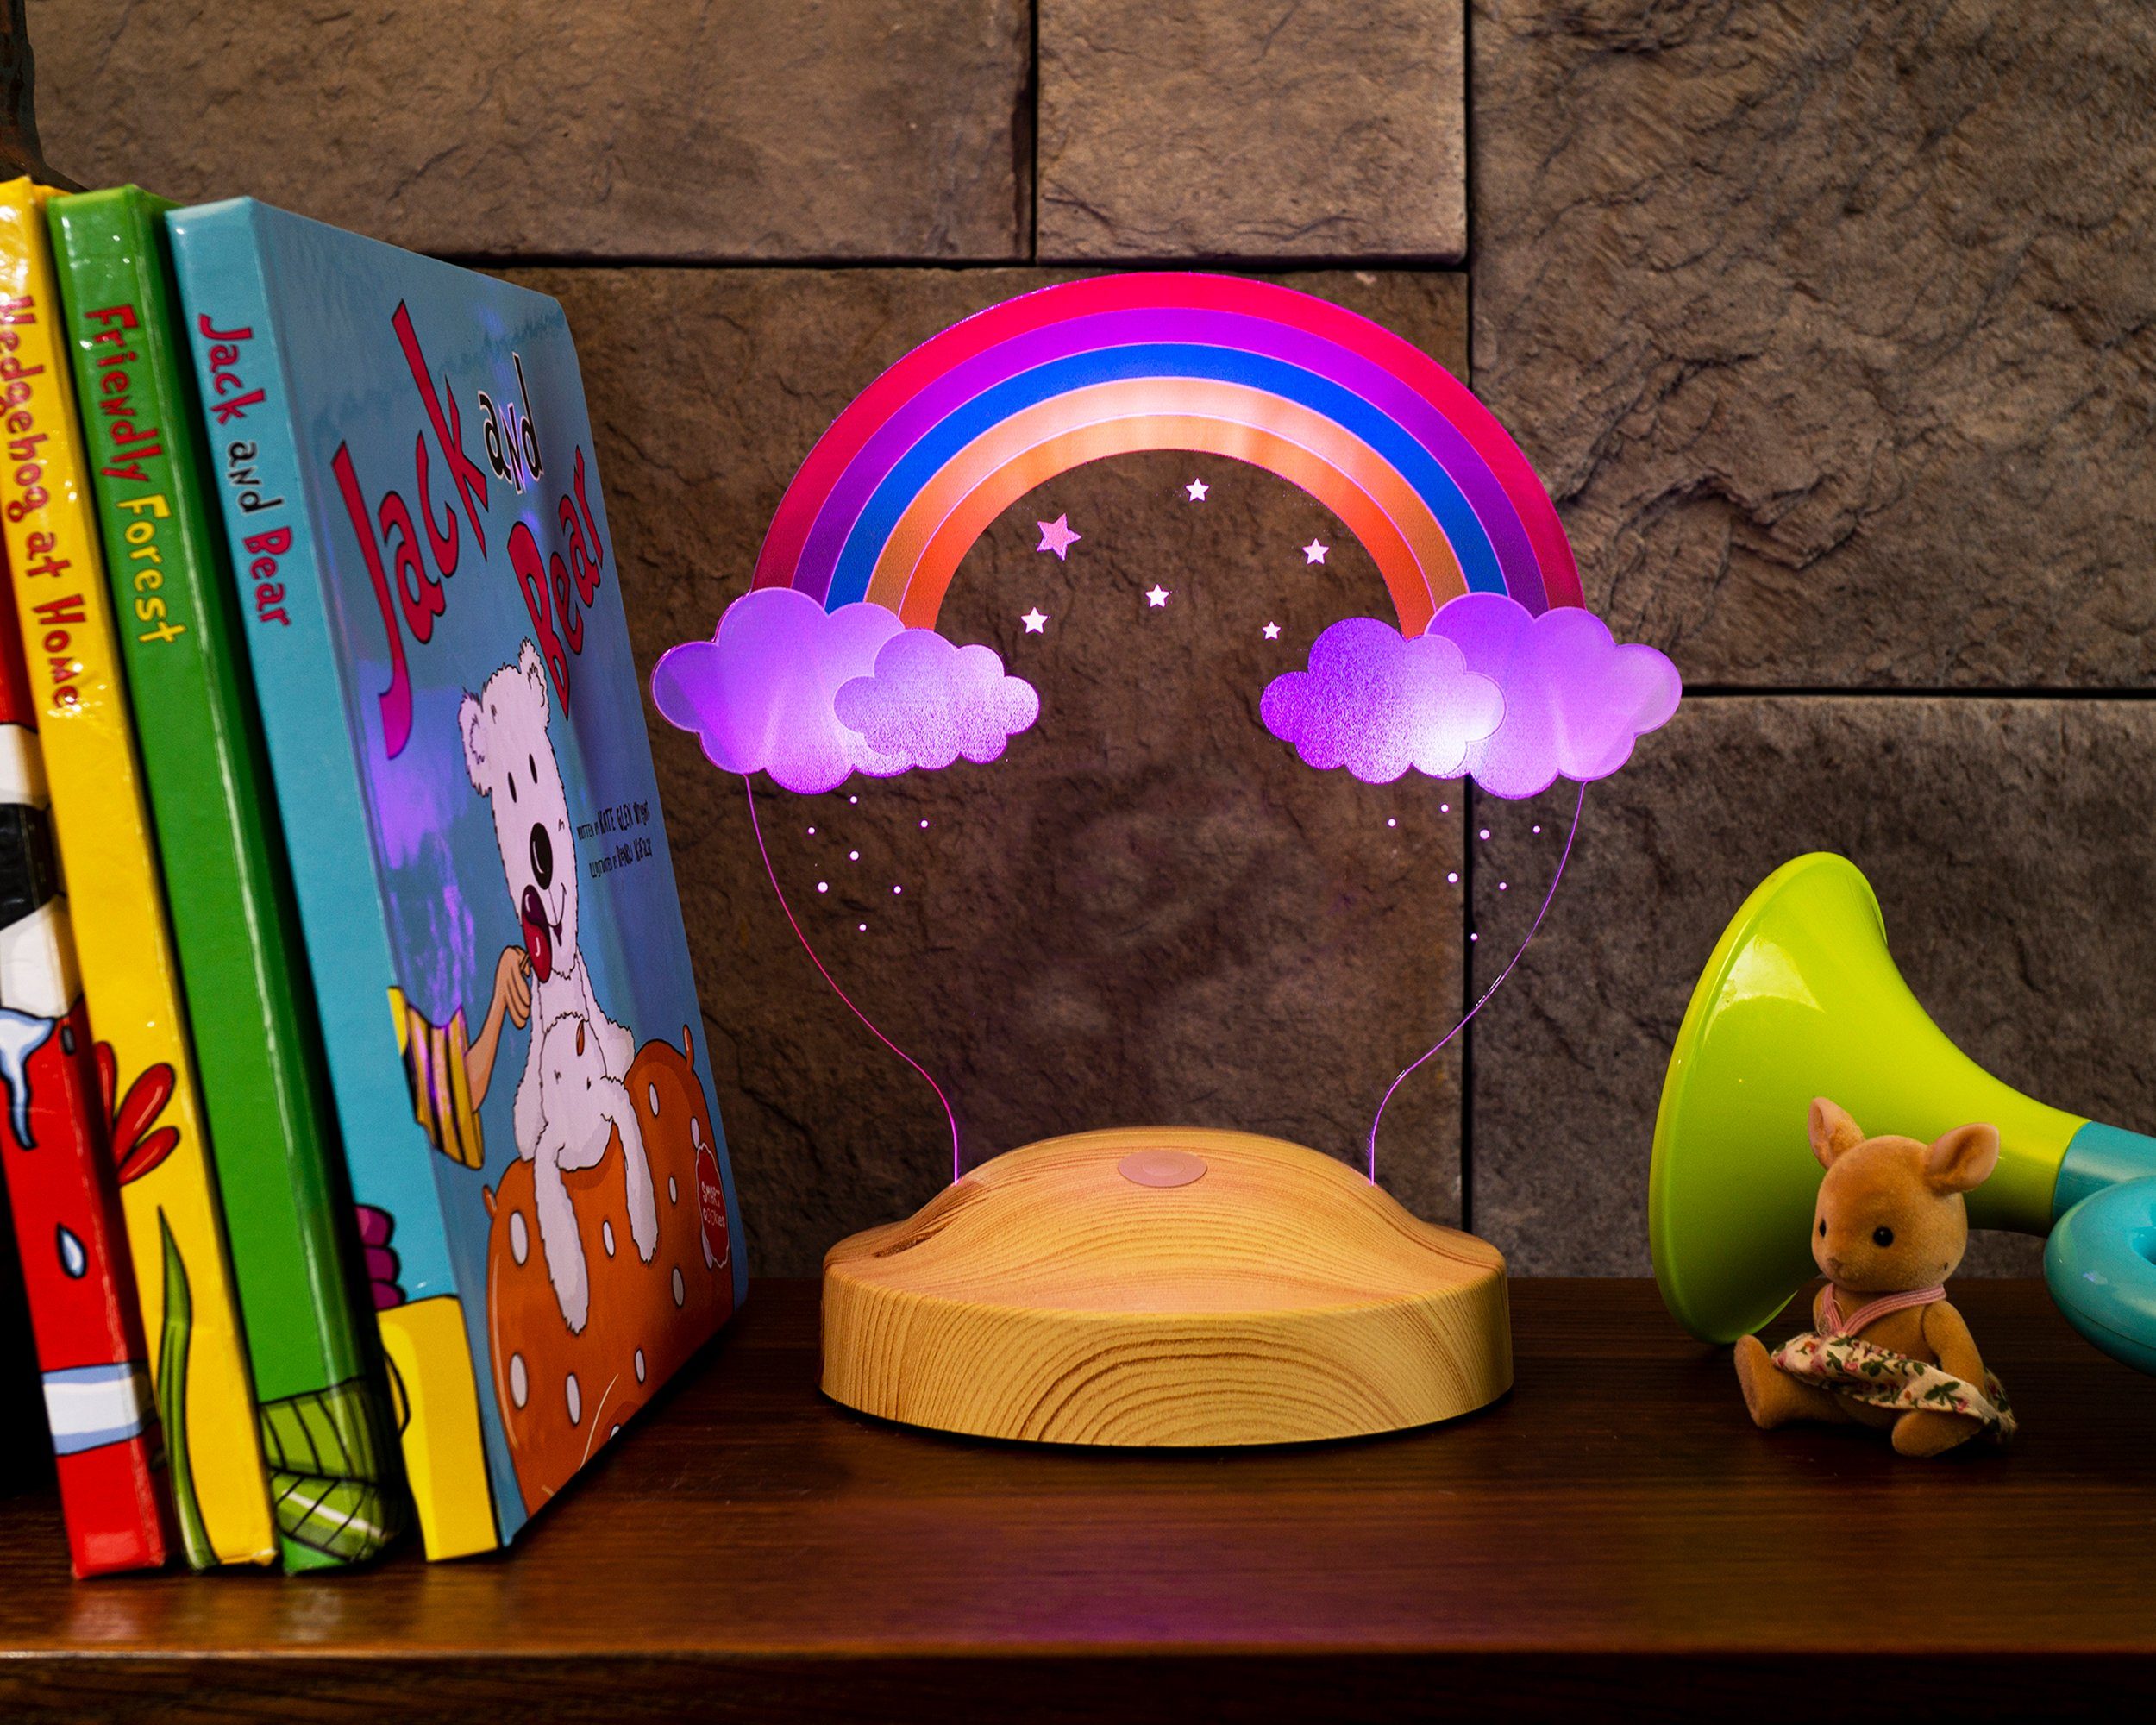 Regenbogen verschiedenen Taufgeschenk, 3D Druck UV Ostern LED Nachttischlampe in kinder, Regenbogen für für LED Farben, LED Geschenkelampe Led integriert, 6 Geburtstags Geschenk Lampe weihnachtsgeschenk fest